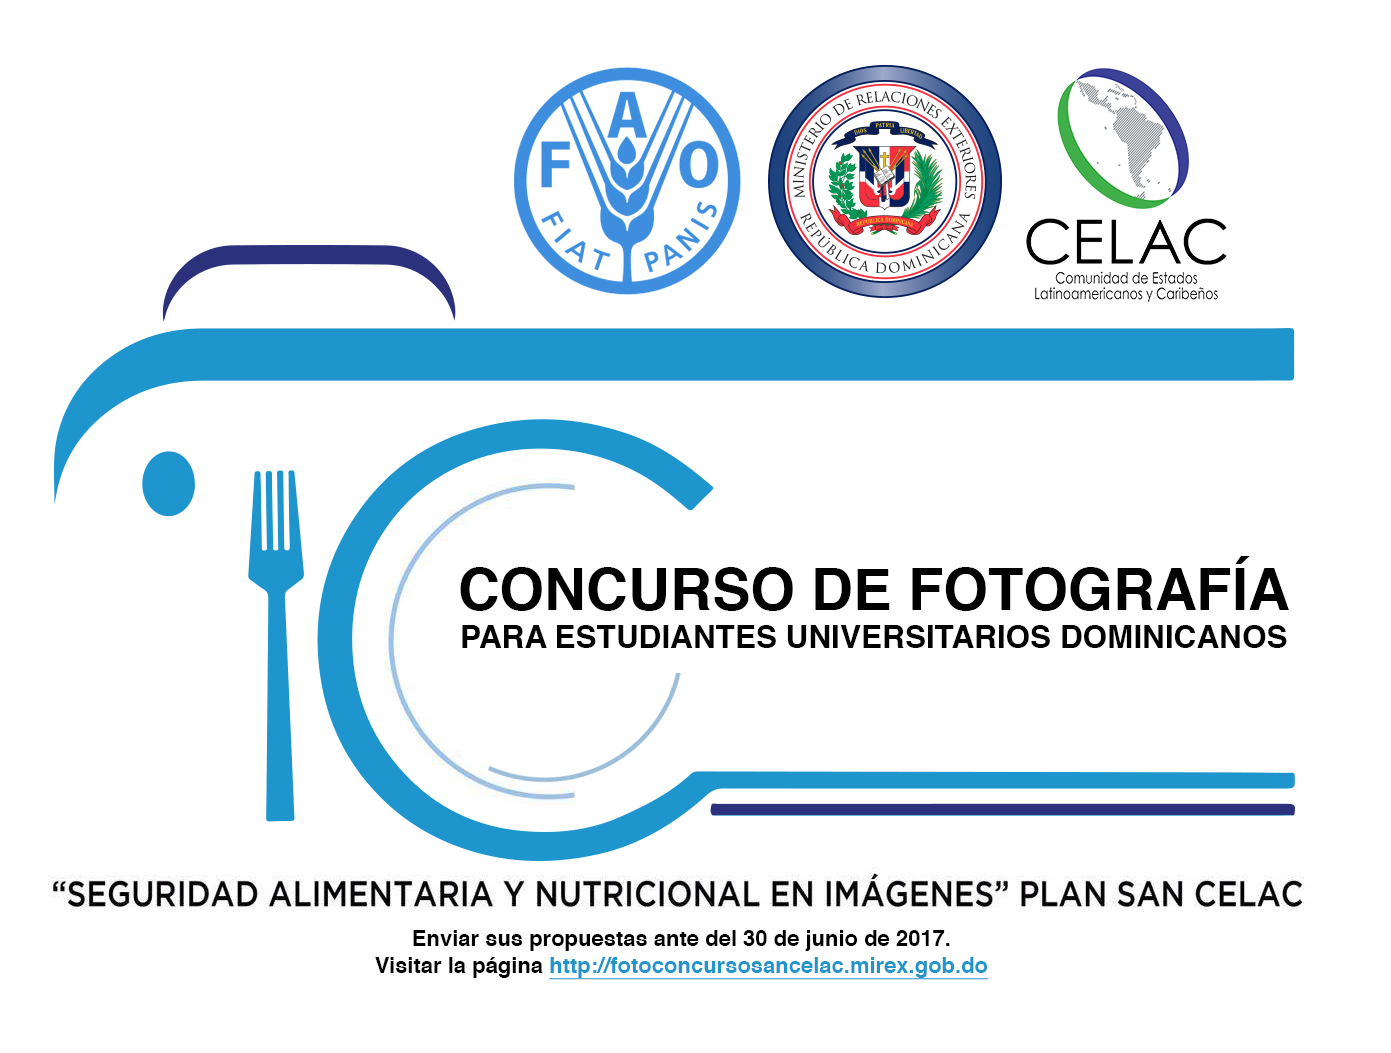  Convocan a concurso fotográfico para estudiantes dominicanos sobre Seguridad Alimentaria y Nutricional